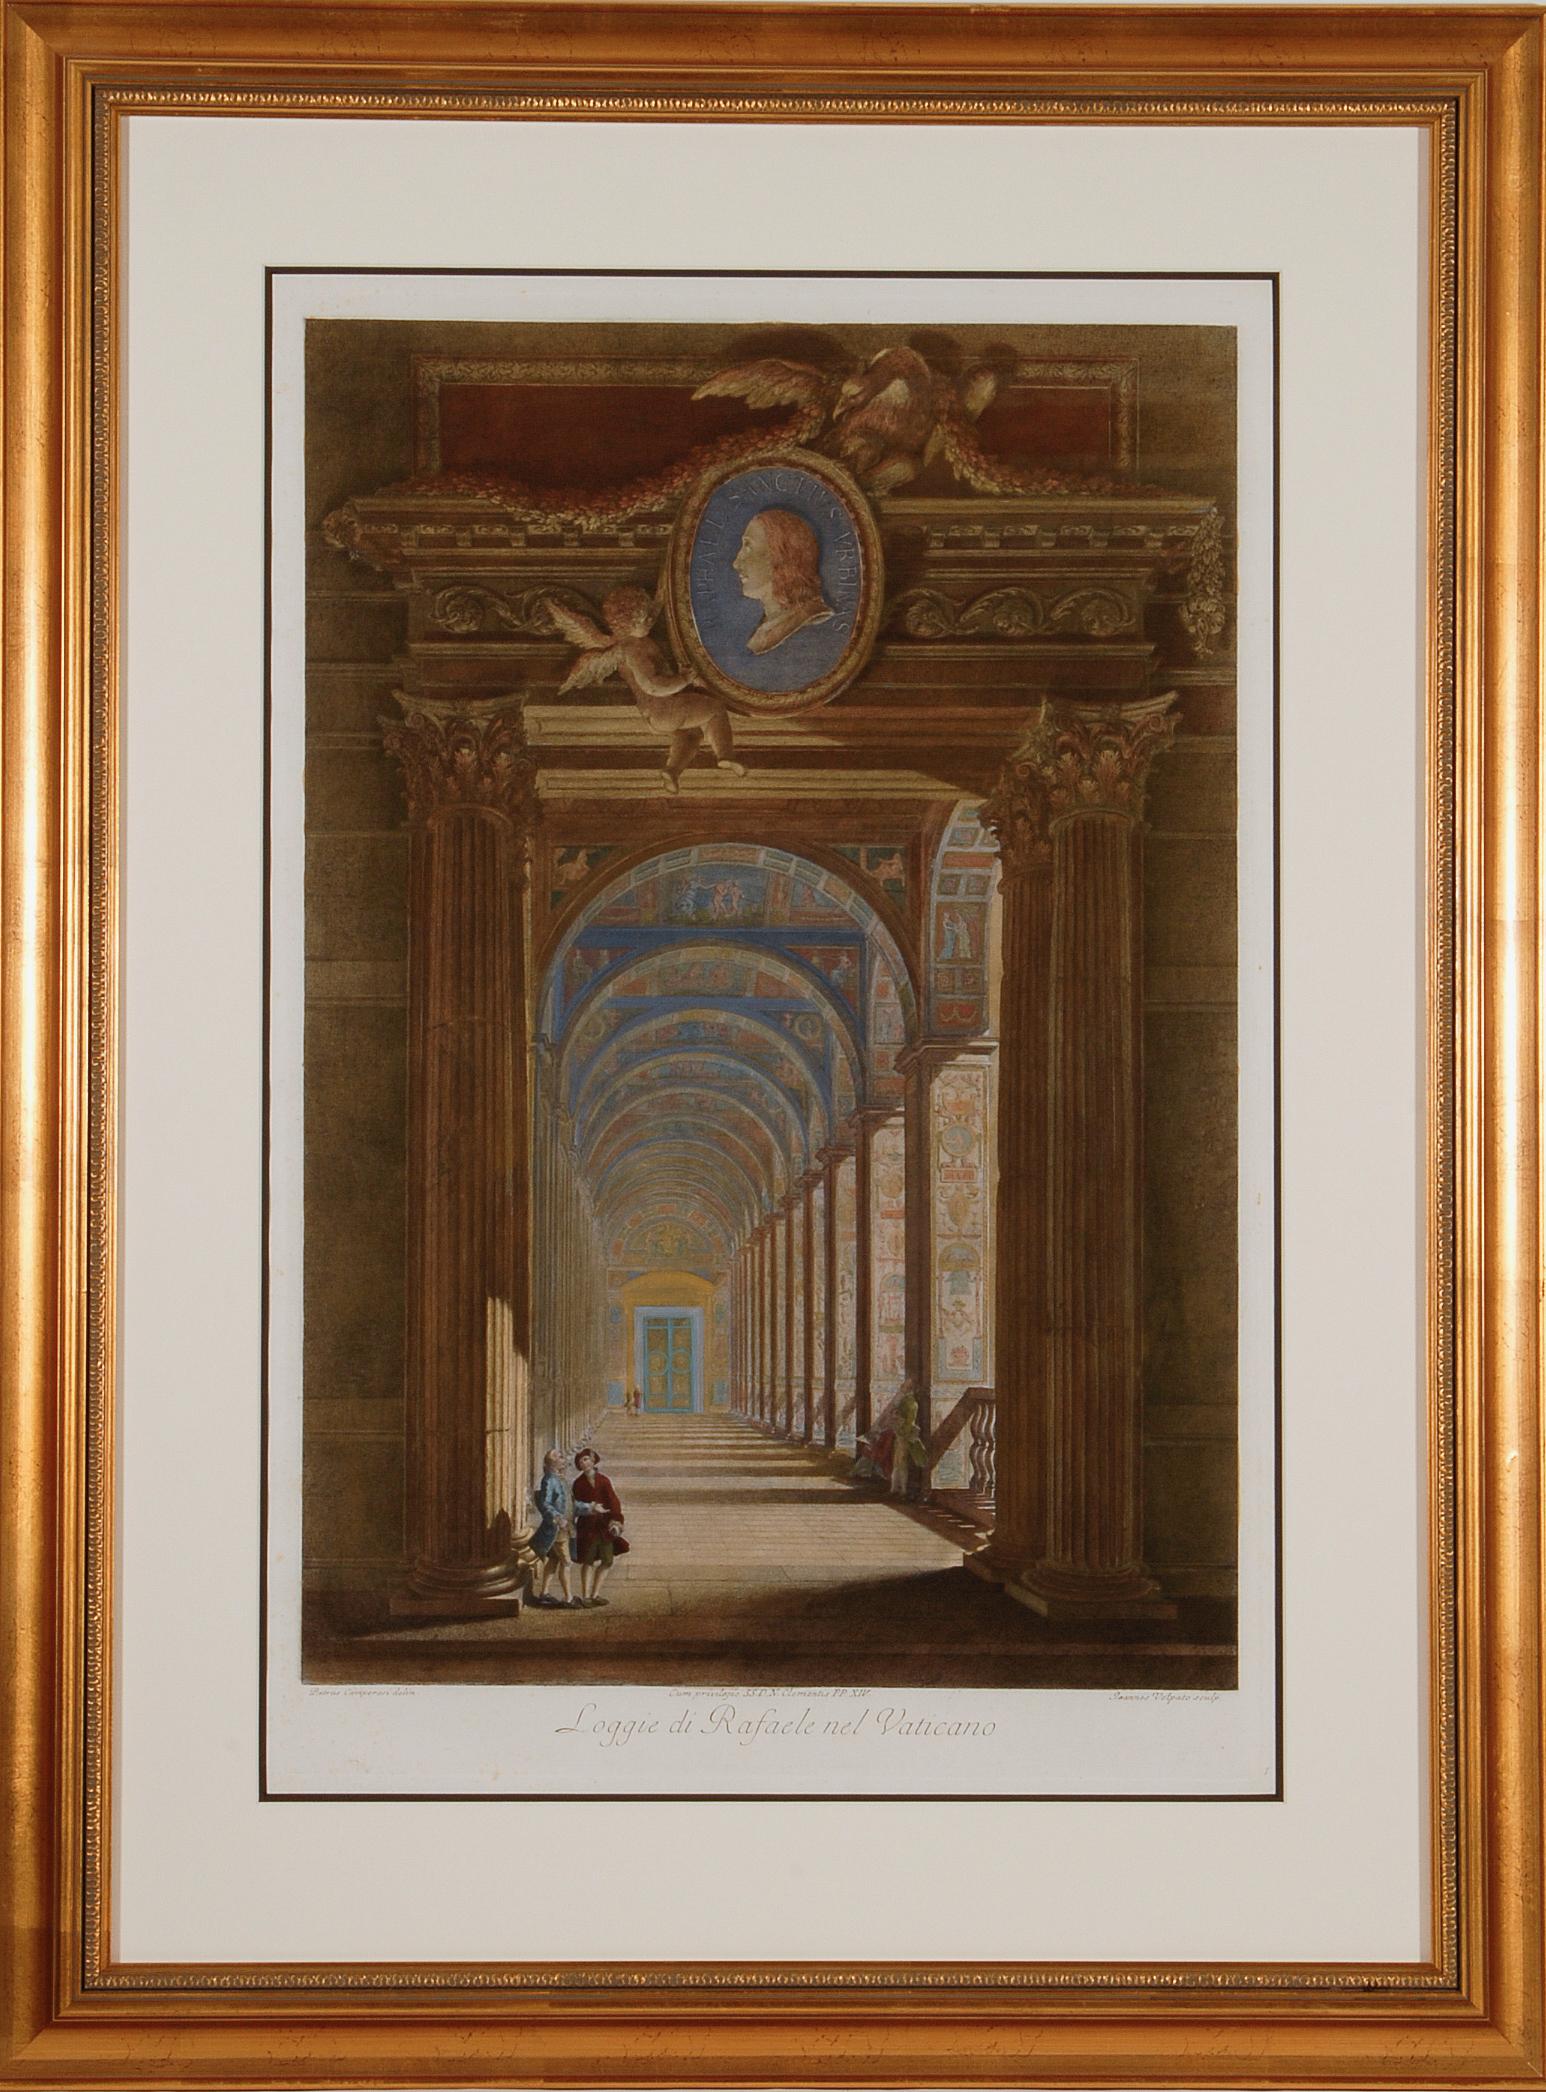  Loggie di Rafaele nel Vaticano : Gravure colorée à la main du 18e siècle par Volpato